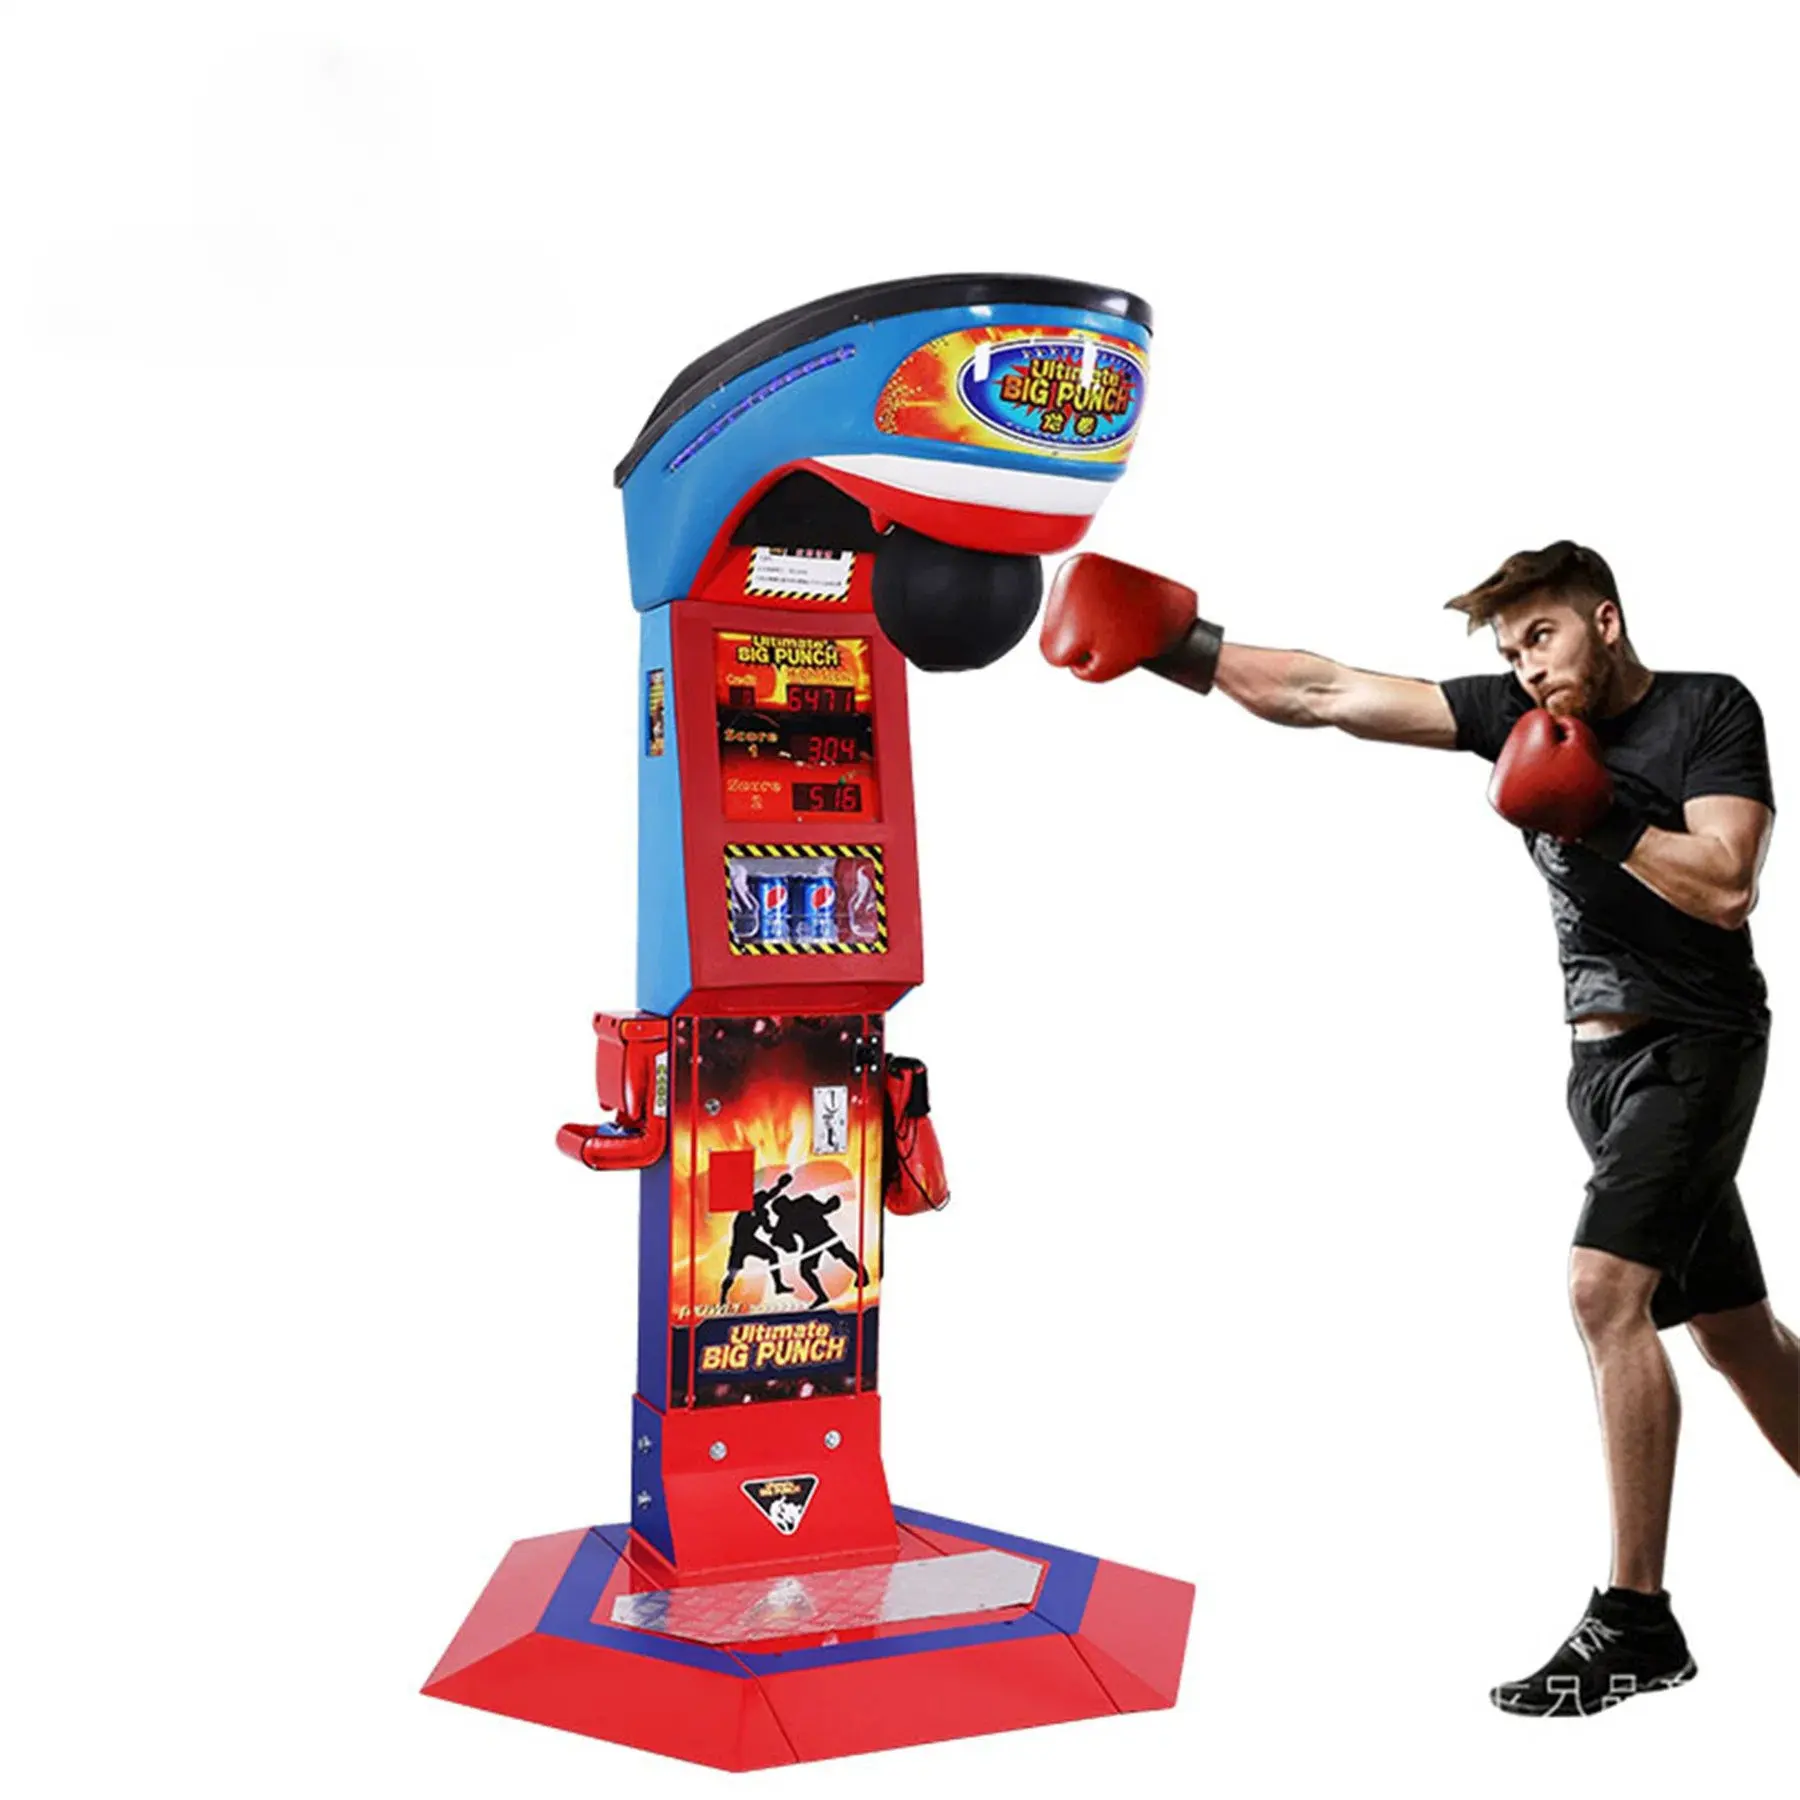 Billet à pièces adultes Dragon Punch Arcade Machine de boxe jeu de poinçonnage Arcade jeux de sport